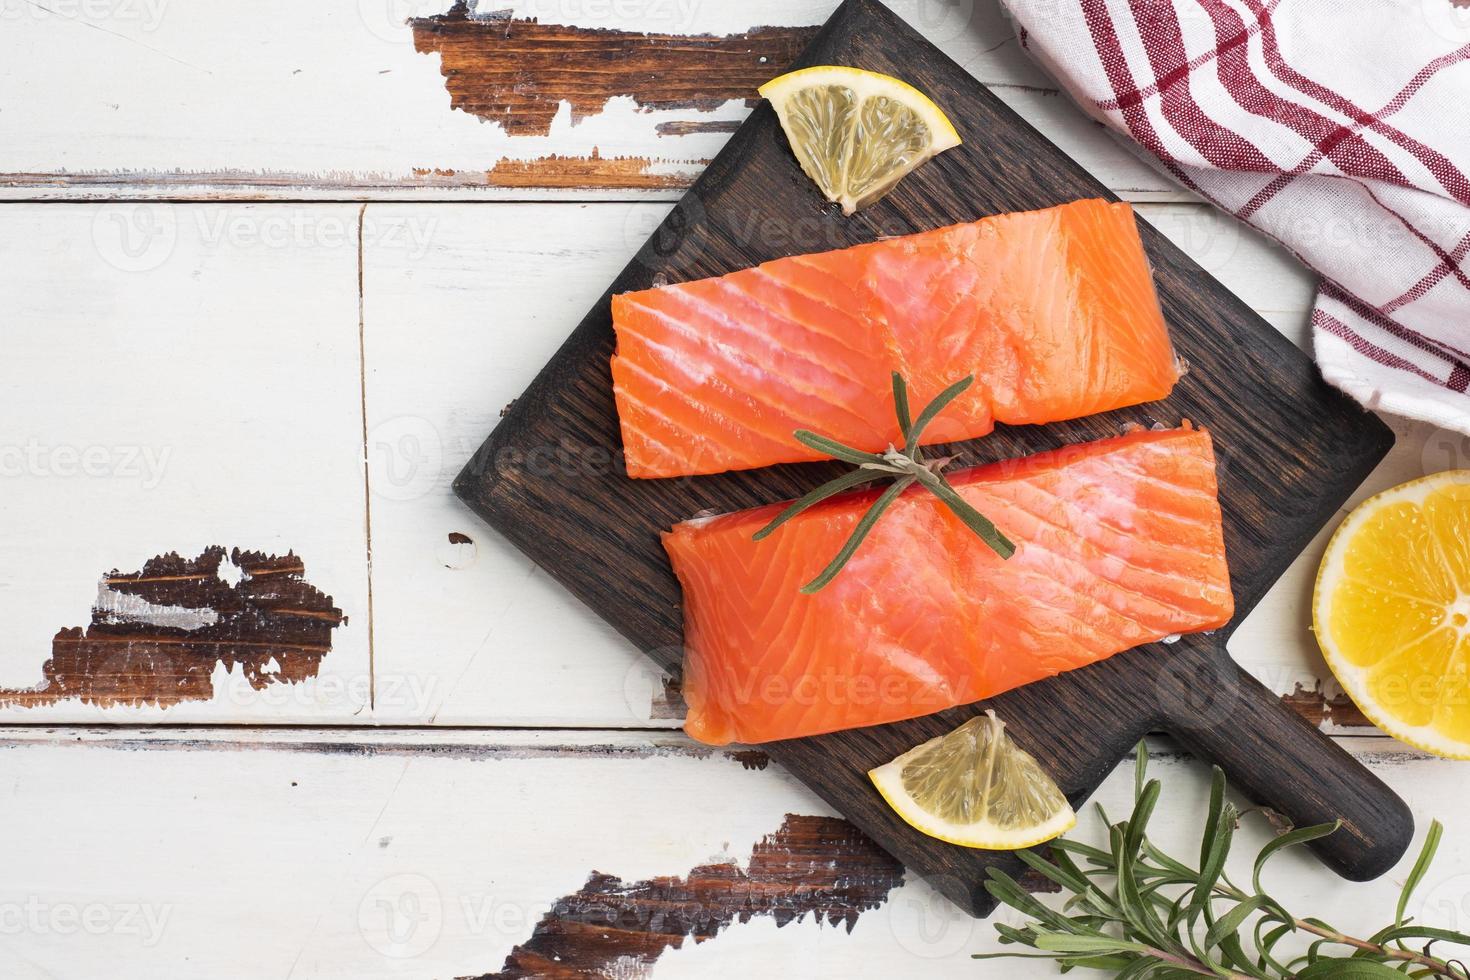 zalmfilet, rood gezouten vis op een houten snijplank. citroen, rozemarijn kruiden. ruimte kopiëren. foto